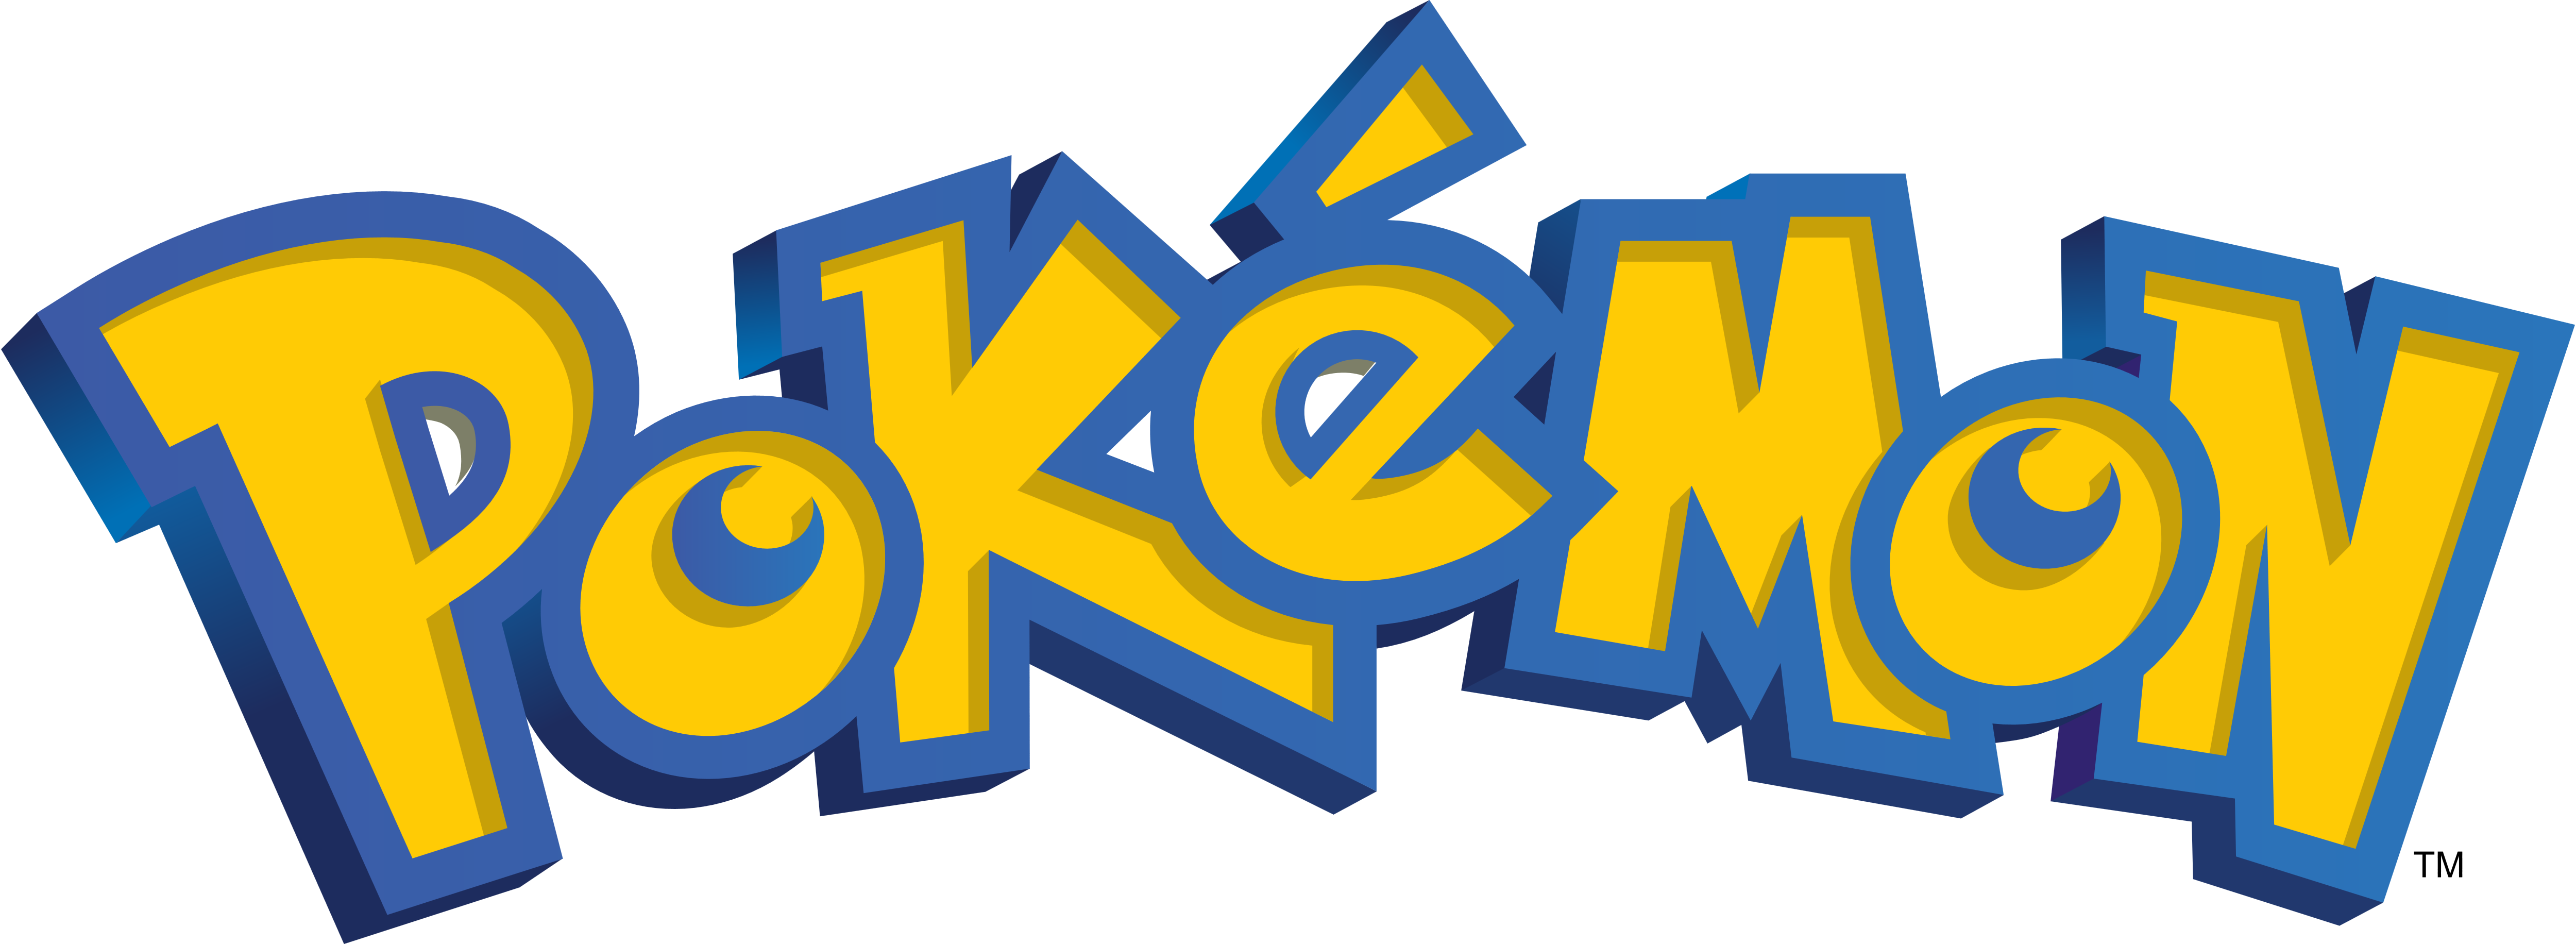 Pokémon Go – Logos Download